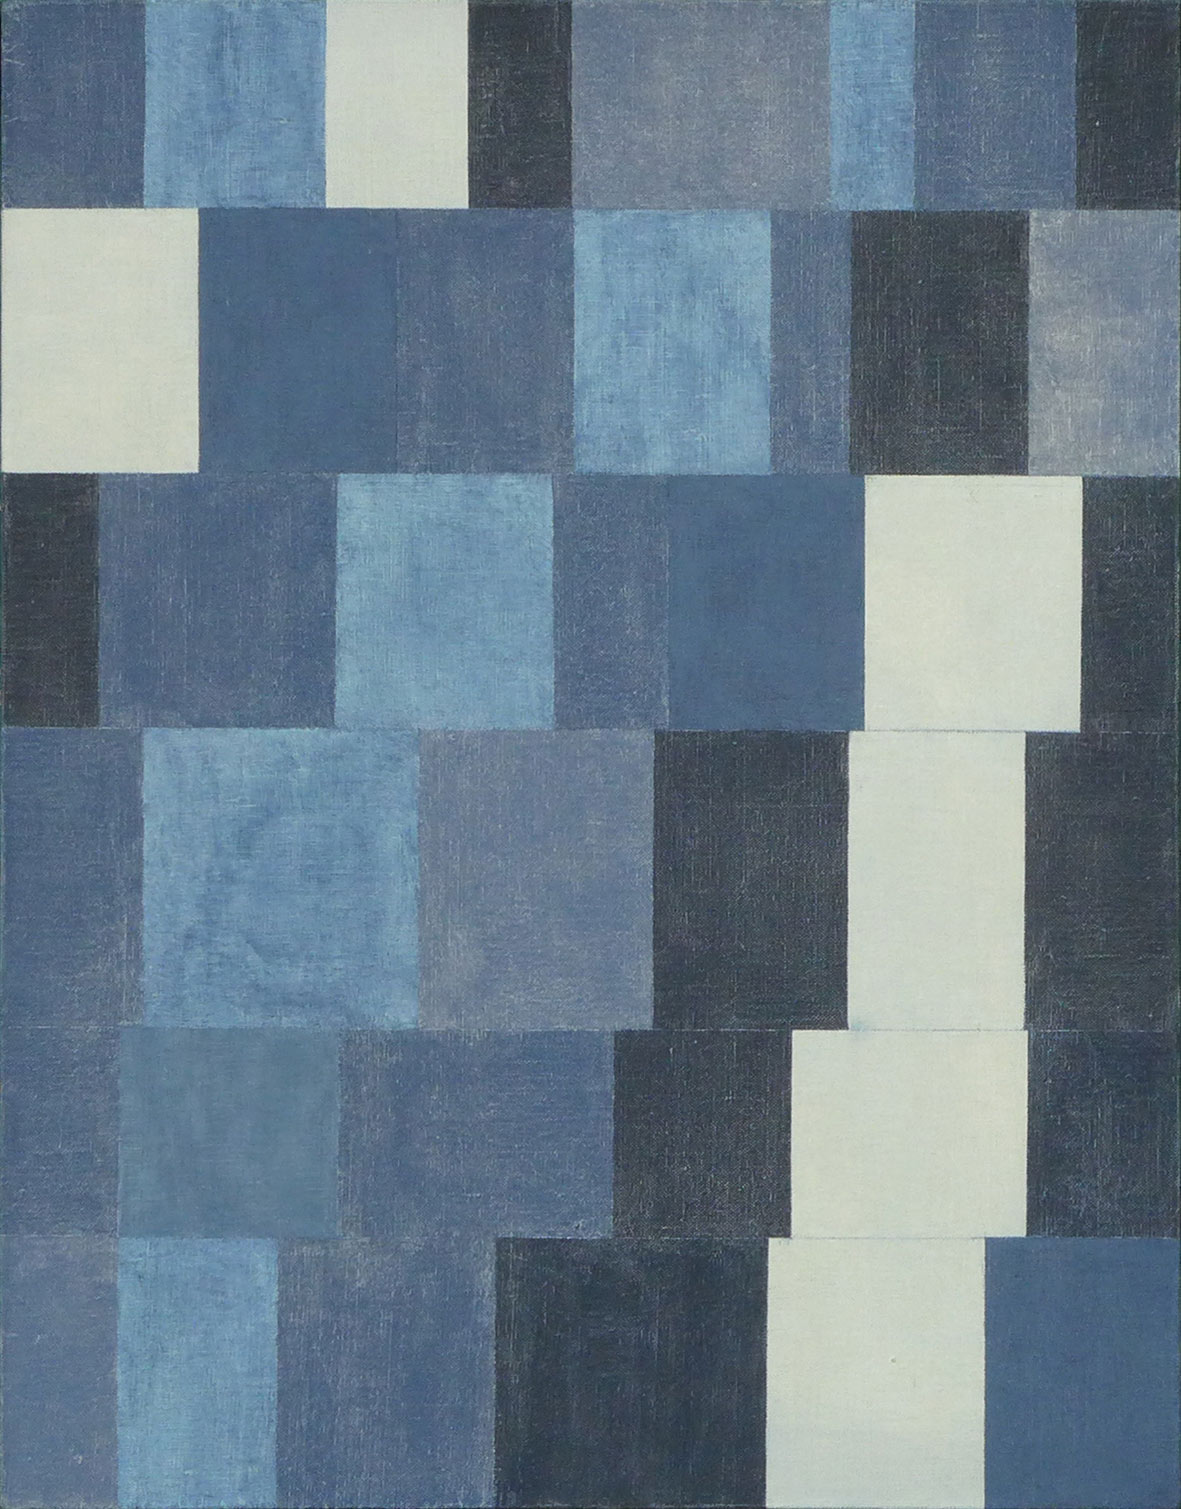 En hommage à Paul Klee, une relecture sérielle de son tableau "Rhythmic (Rythmical)" dessiné avec la même géométrie et peint avec les couleurs, blanc, gris, noir et bleu, disposées selon le rythme des nombres 3, 5, 8 et 13.